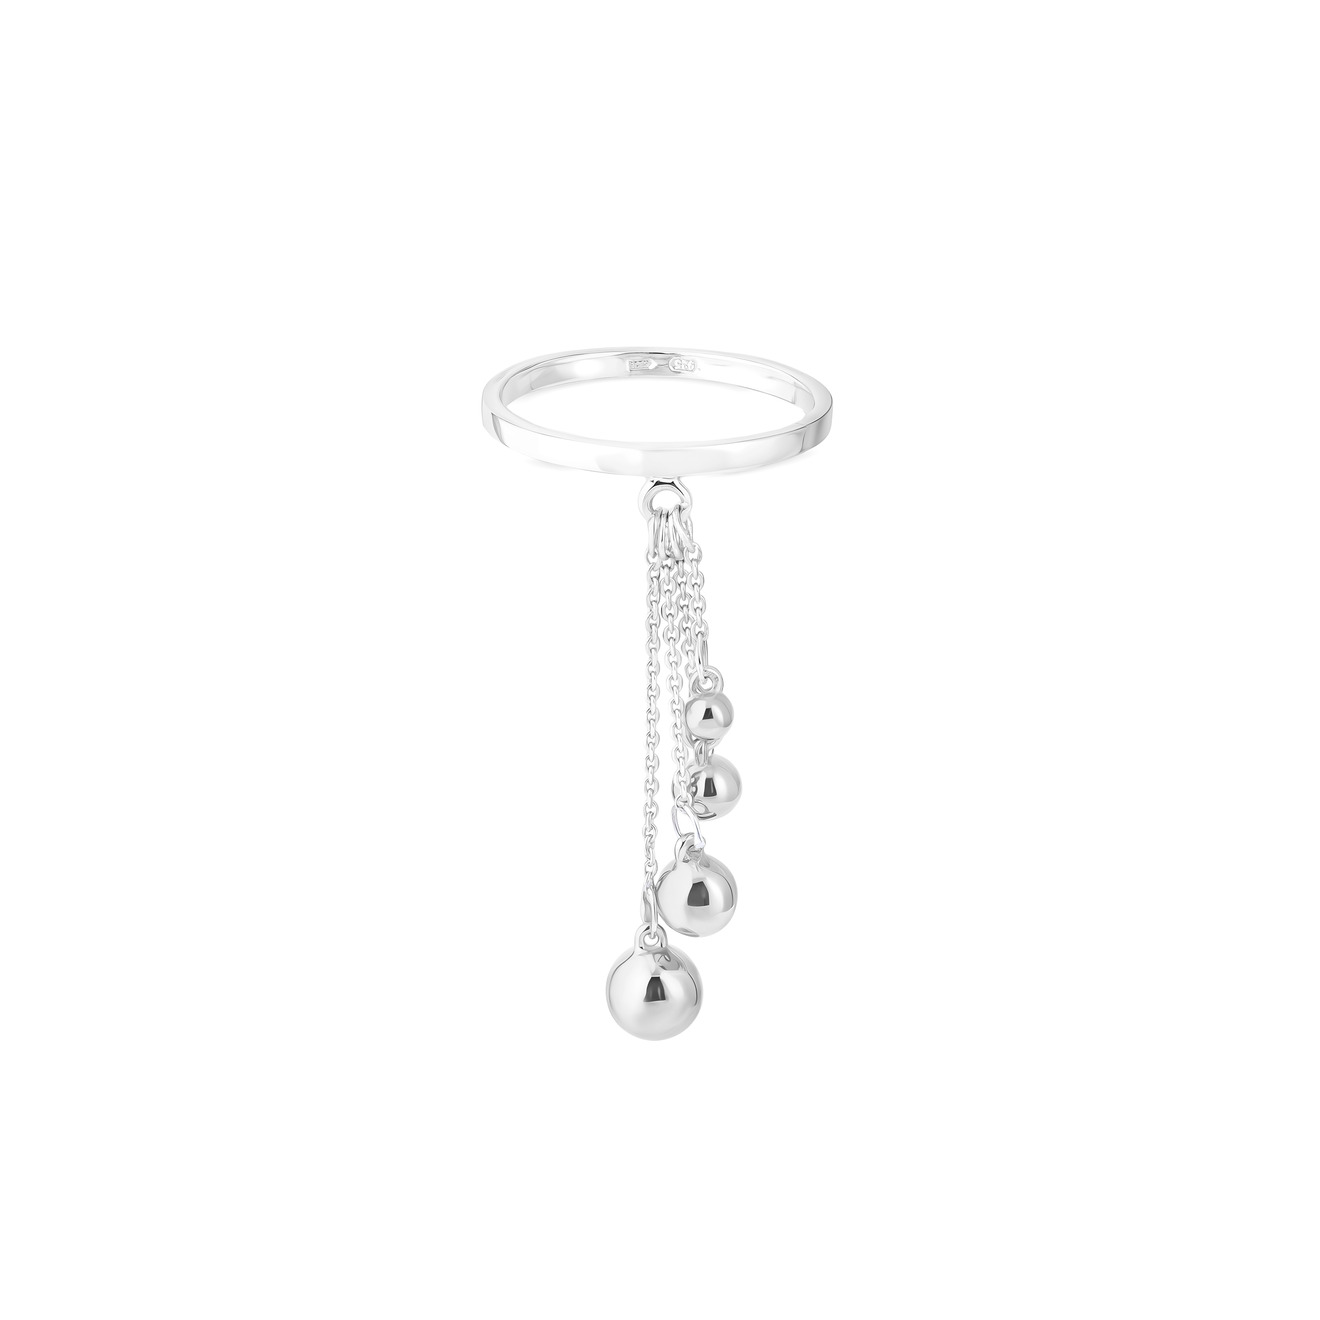 УРА jewelry Кольцо из серебра с шариками на цепочке